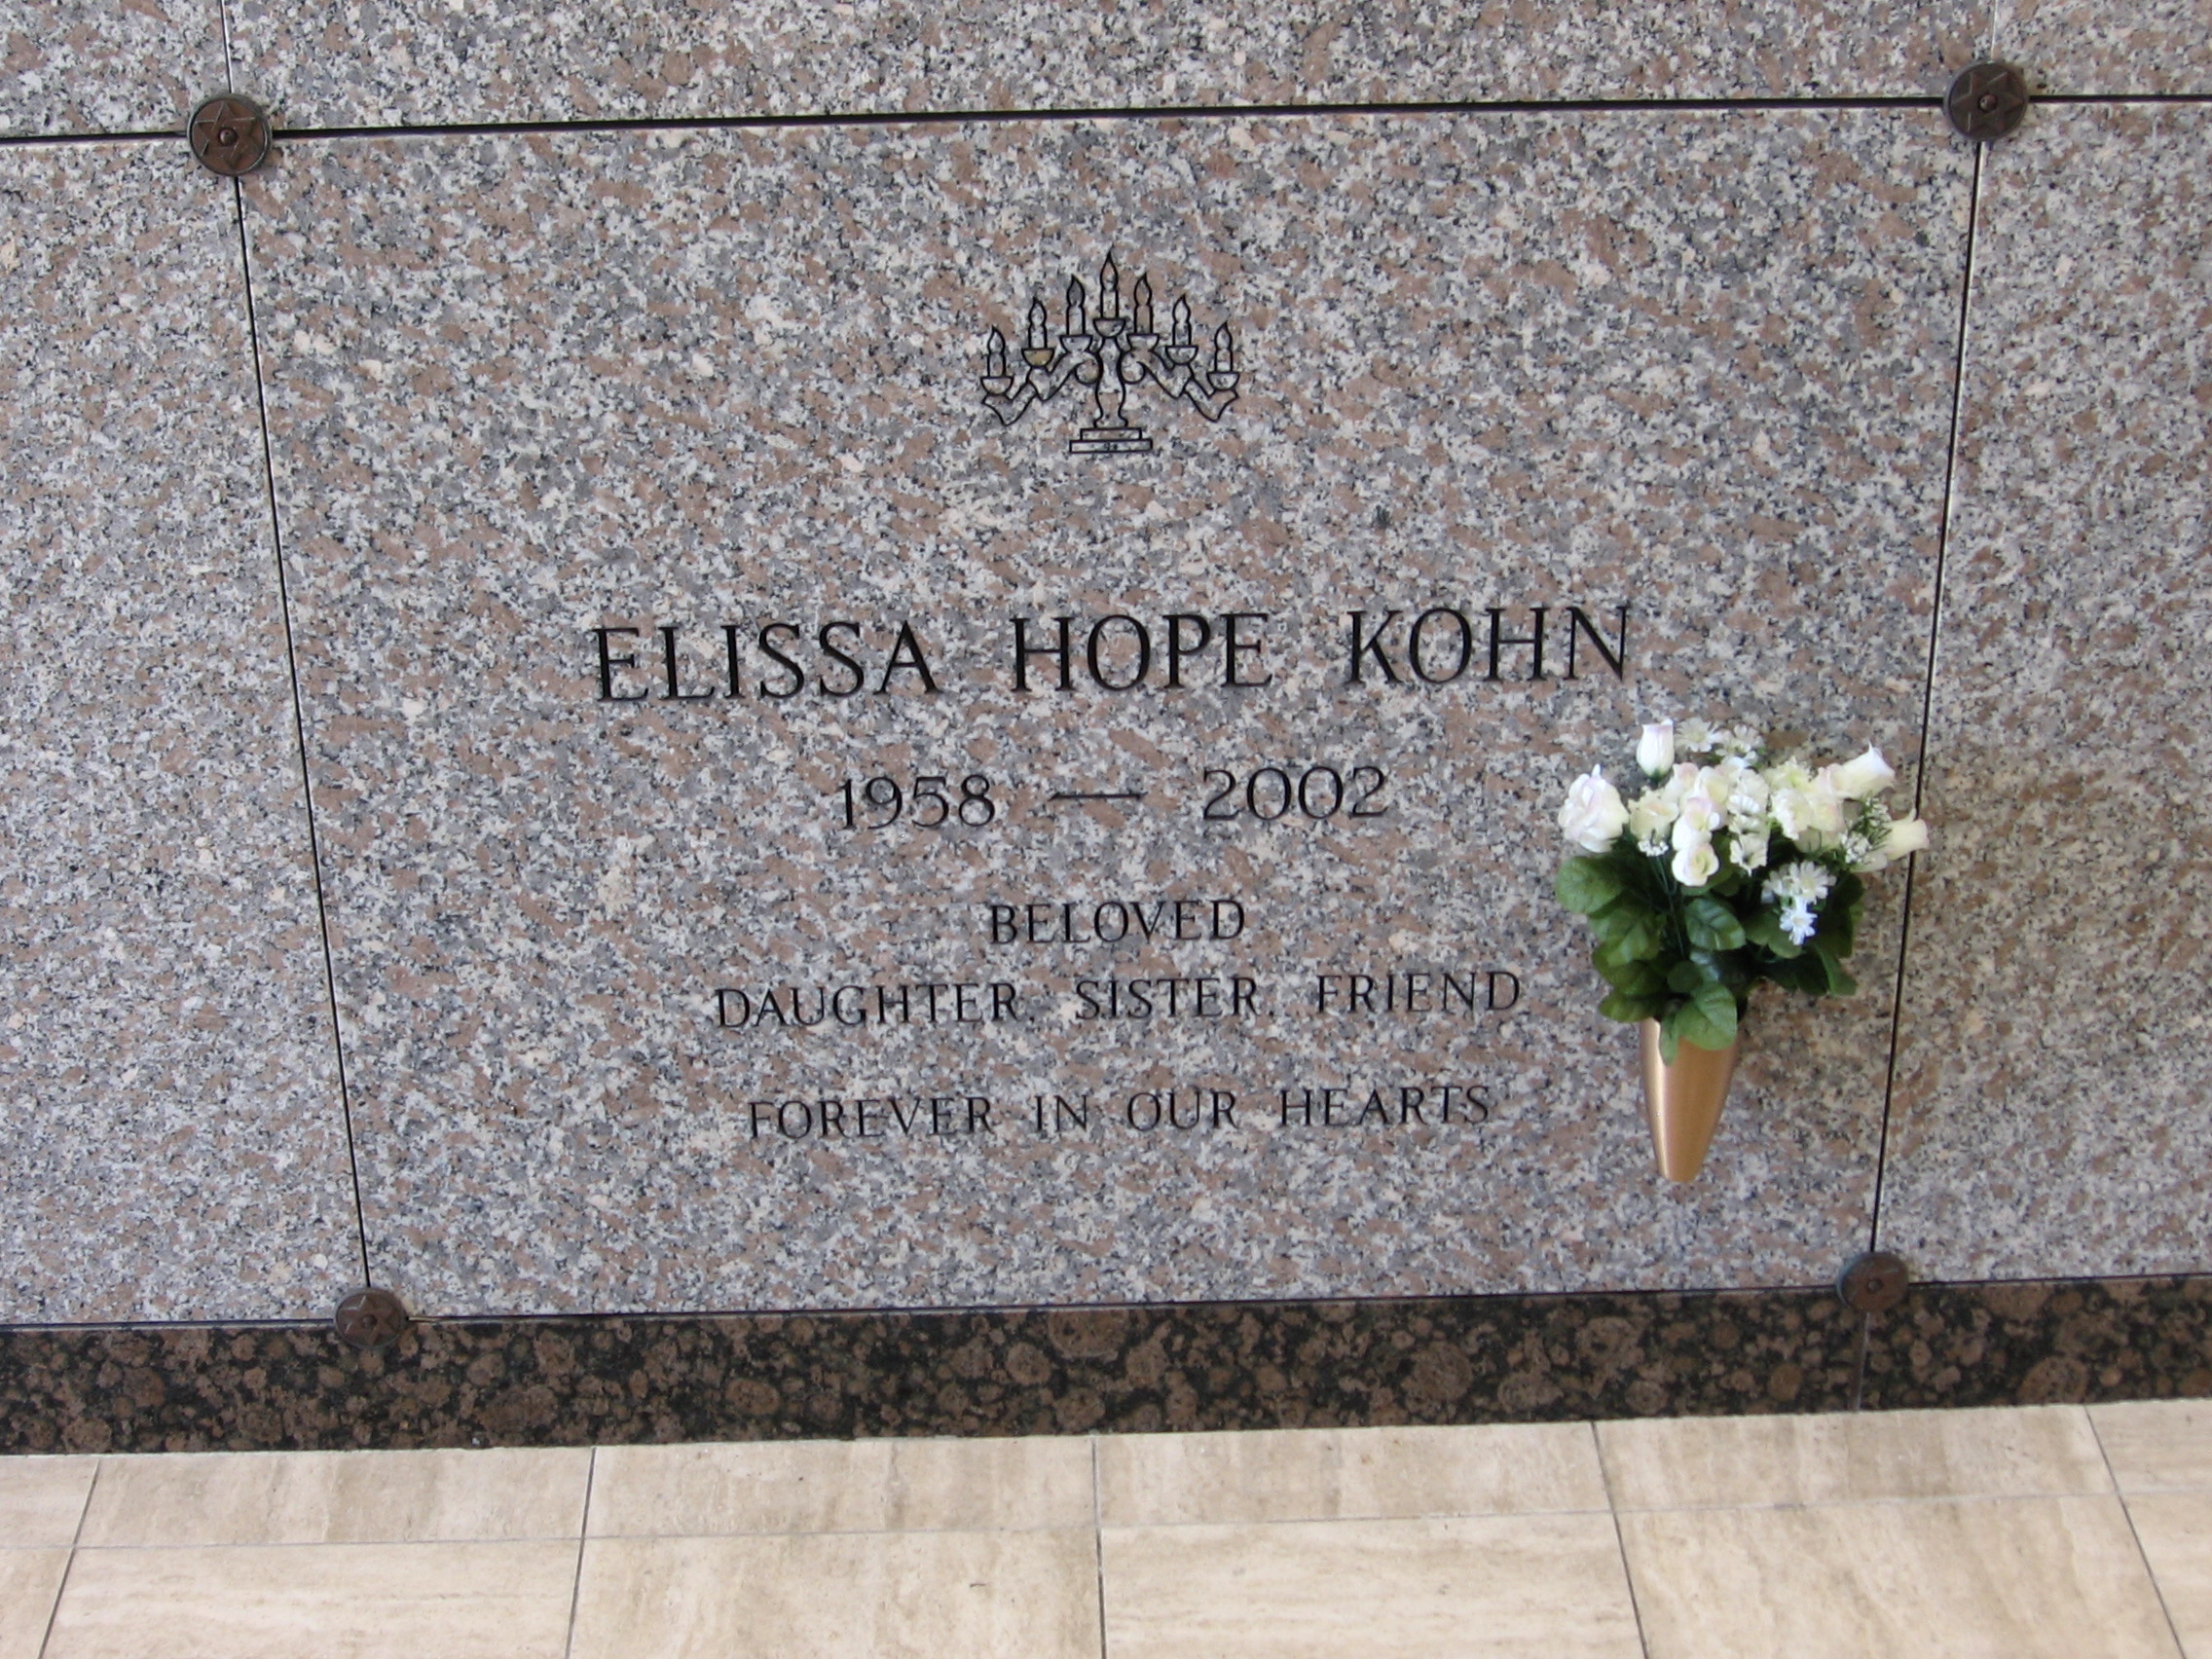 Elissa Hope Kohn